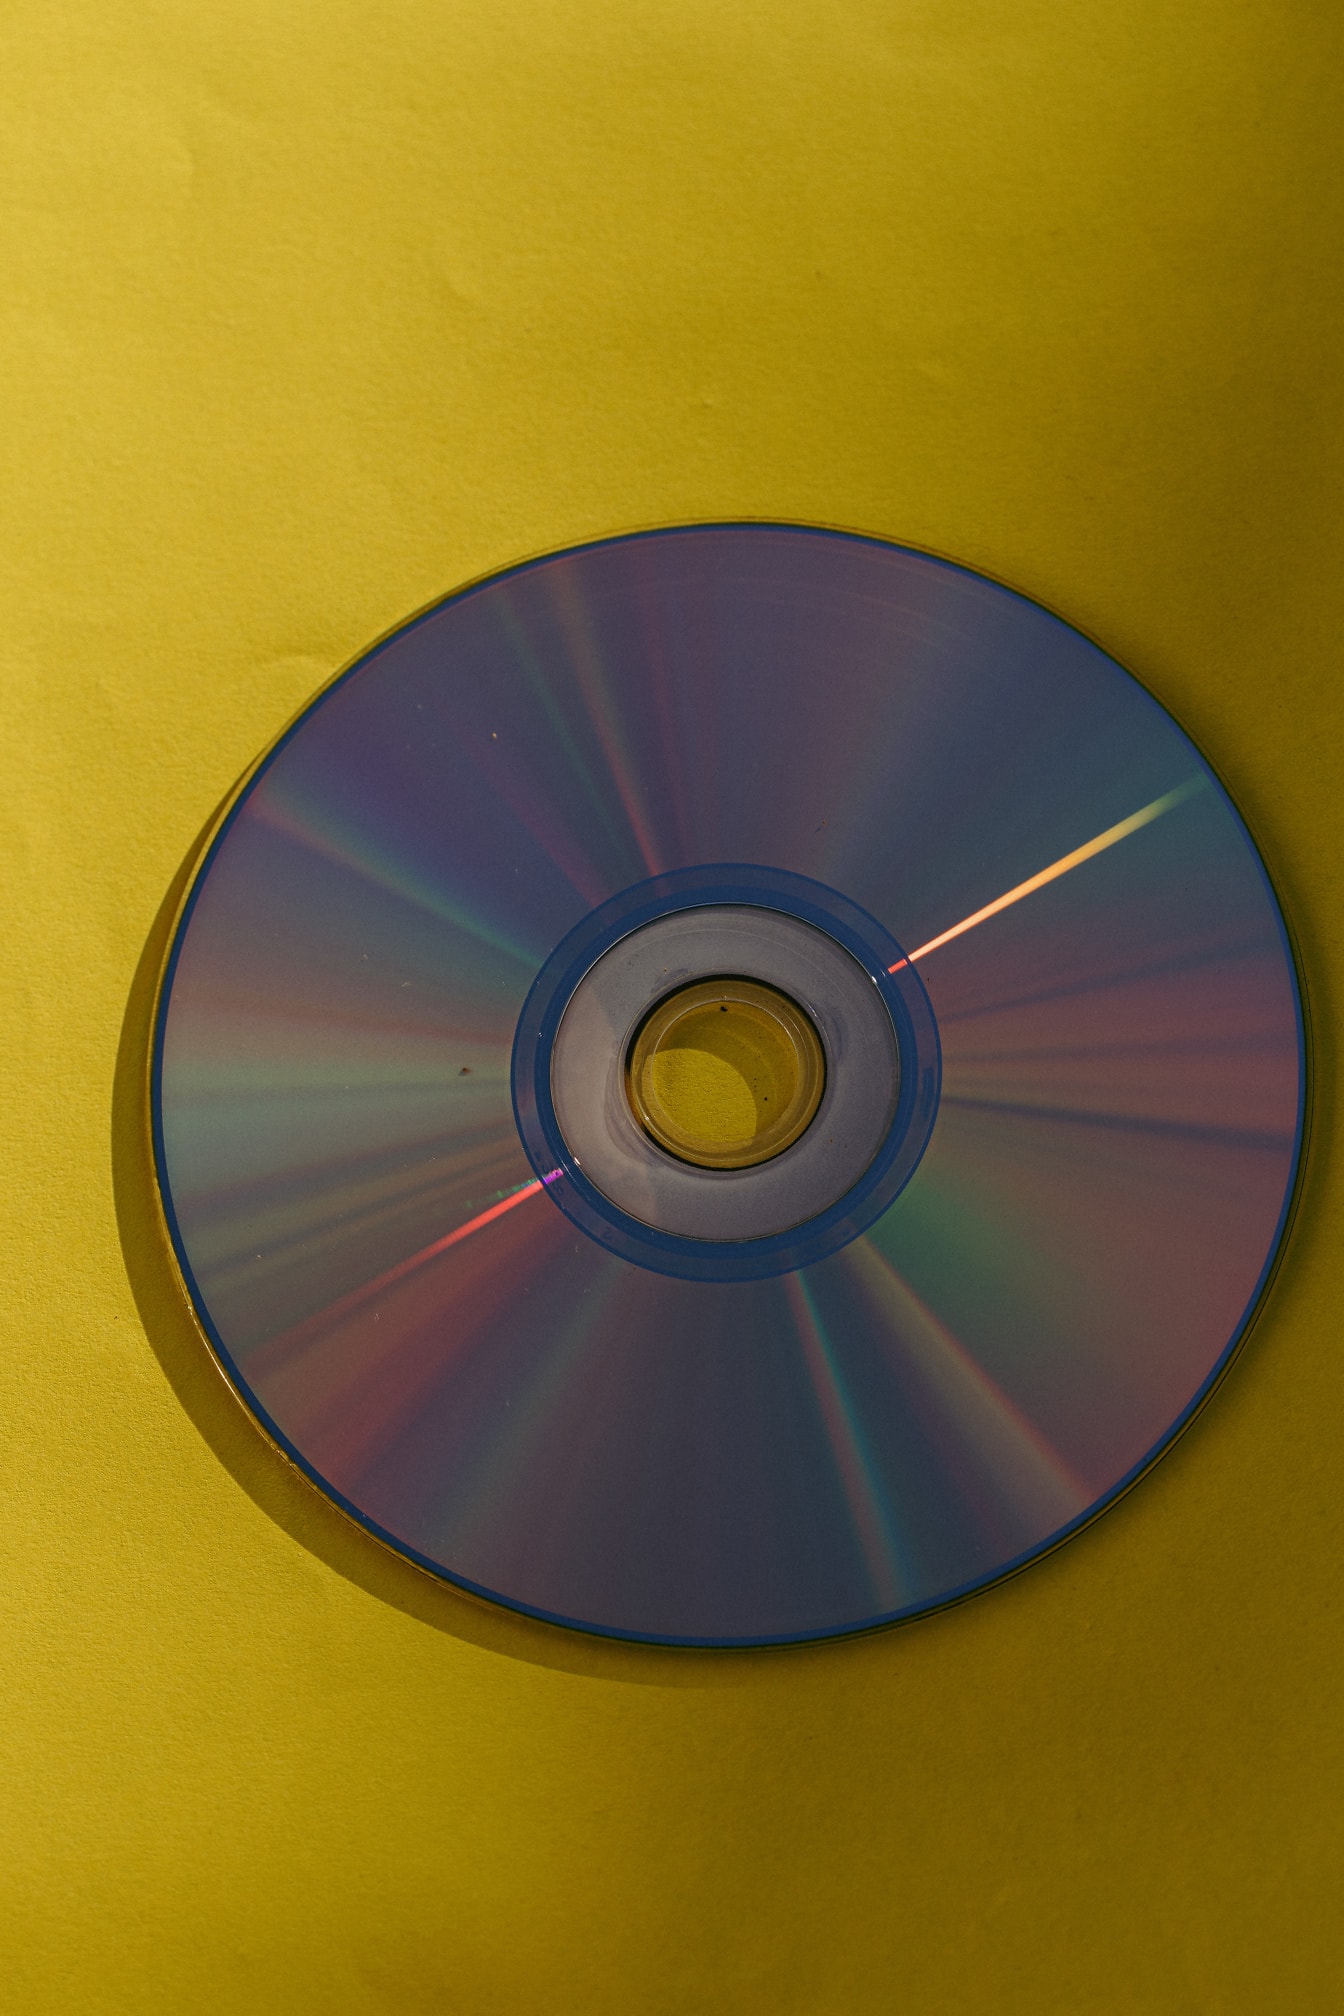 Disco DVD de copia de seguridad con reflejo brillante en papel amarillo